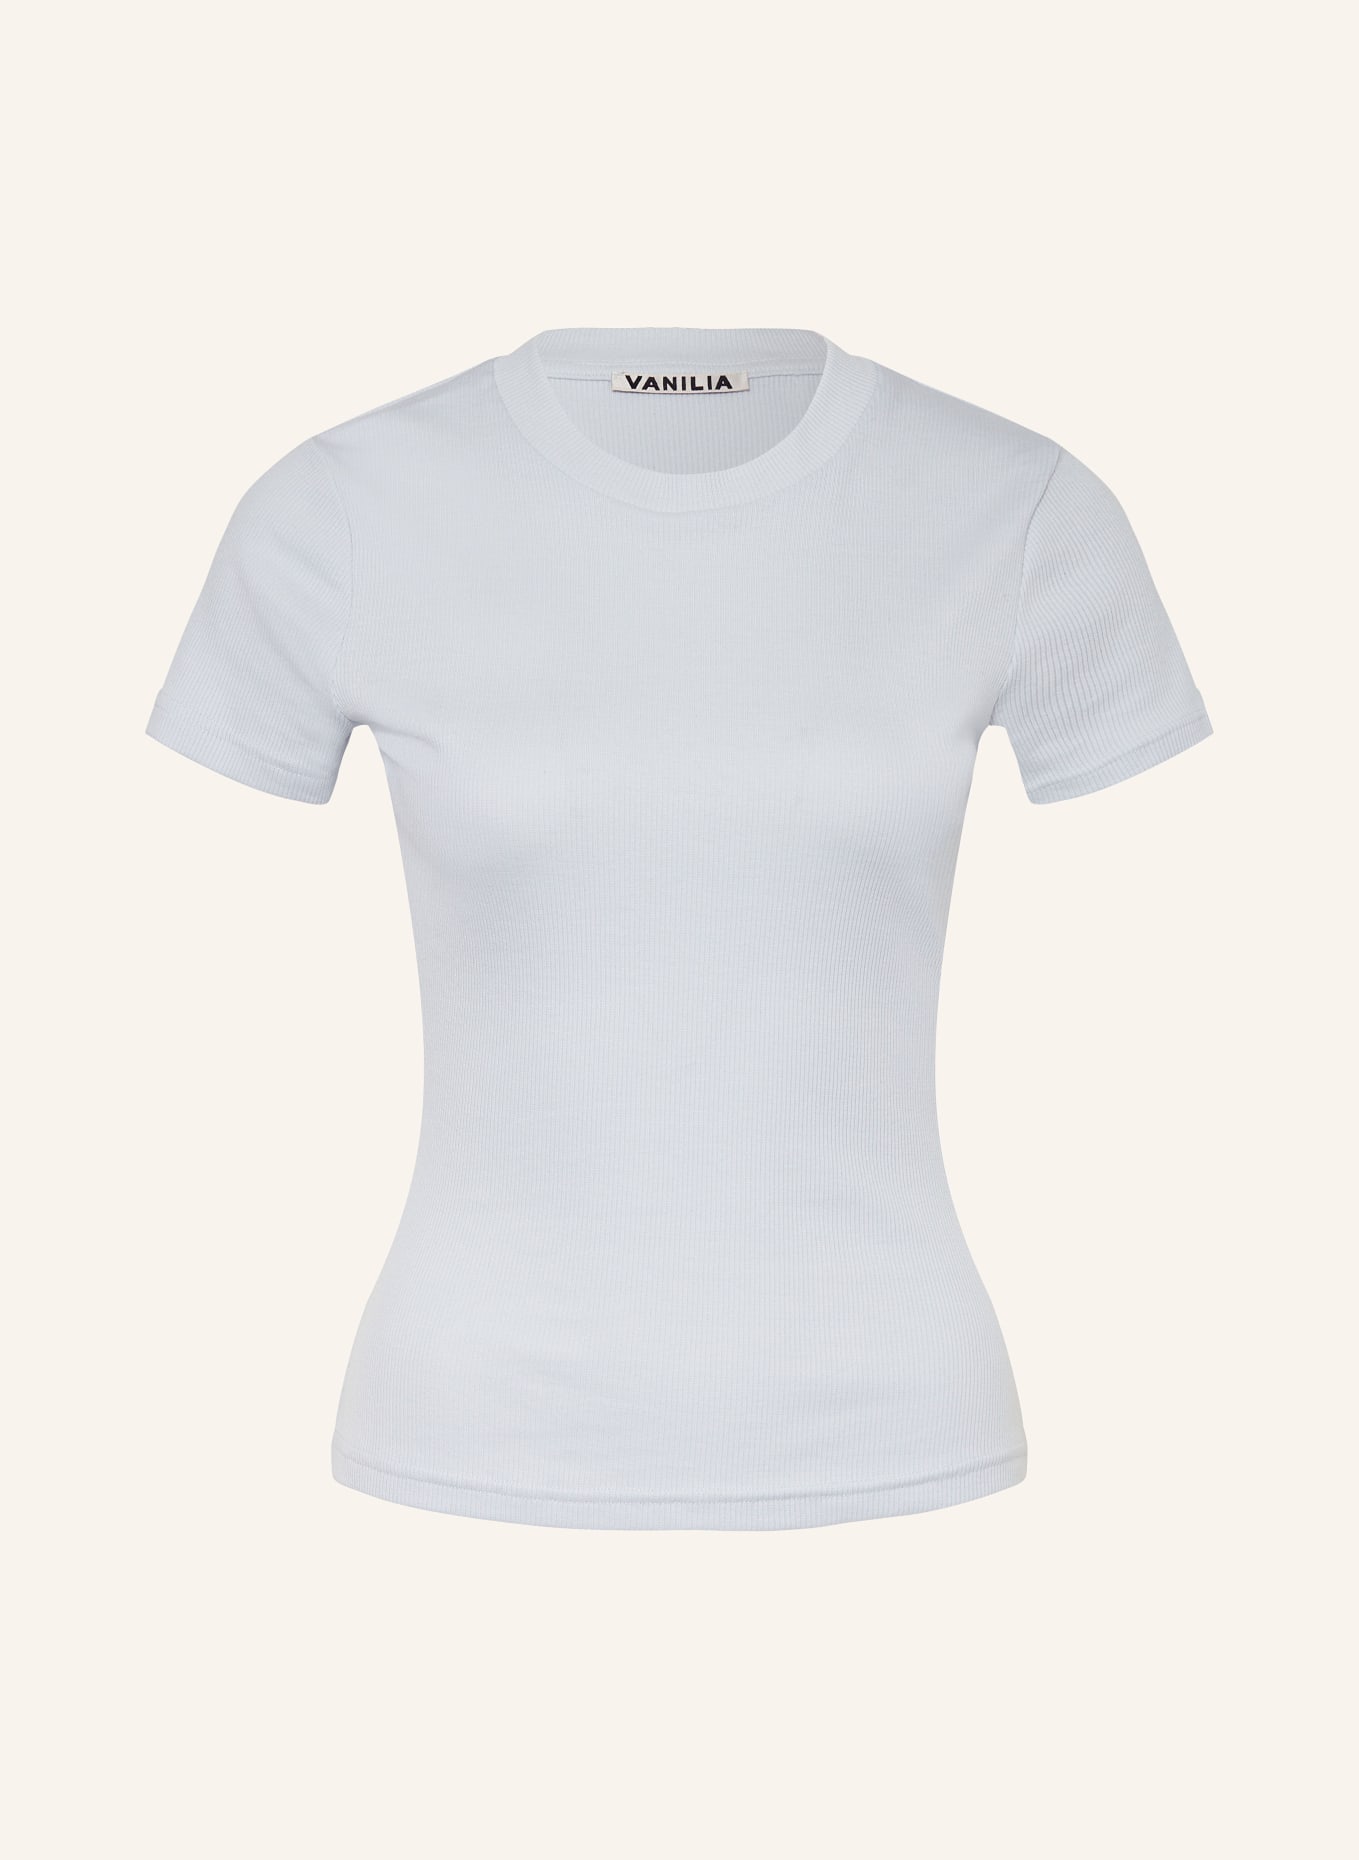 VANILIA T-shirt, Color: LIGHT BLUE (Image 1)